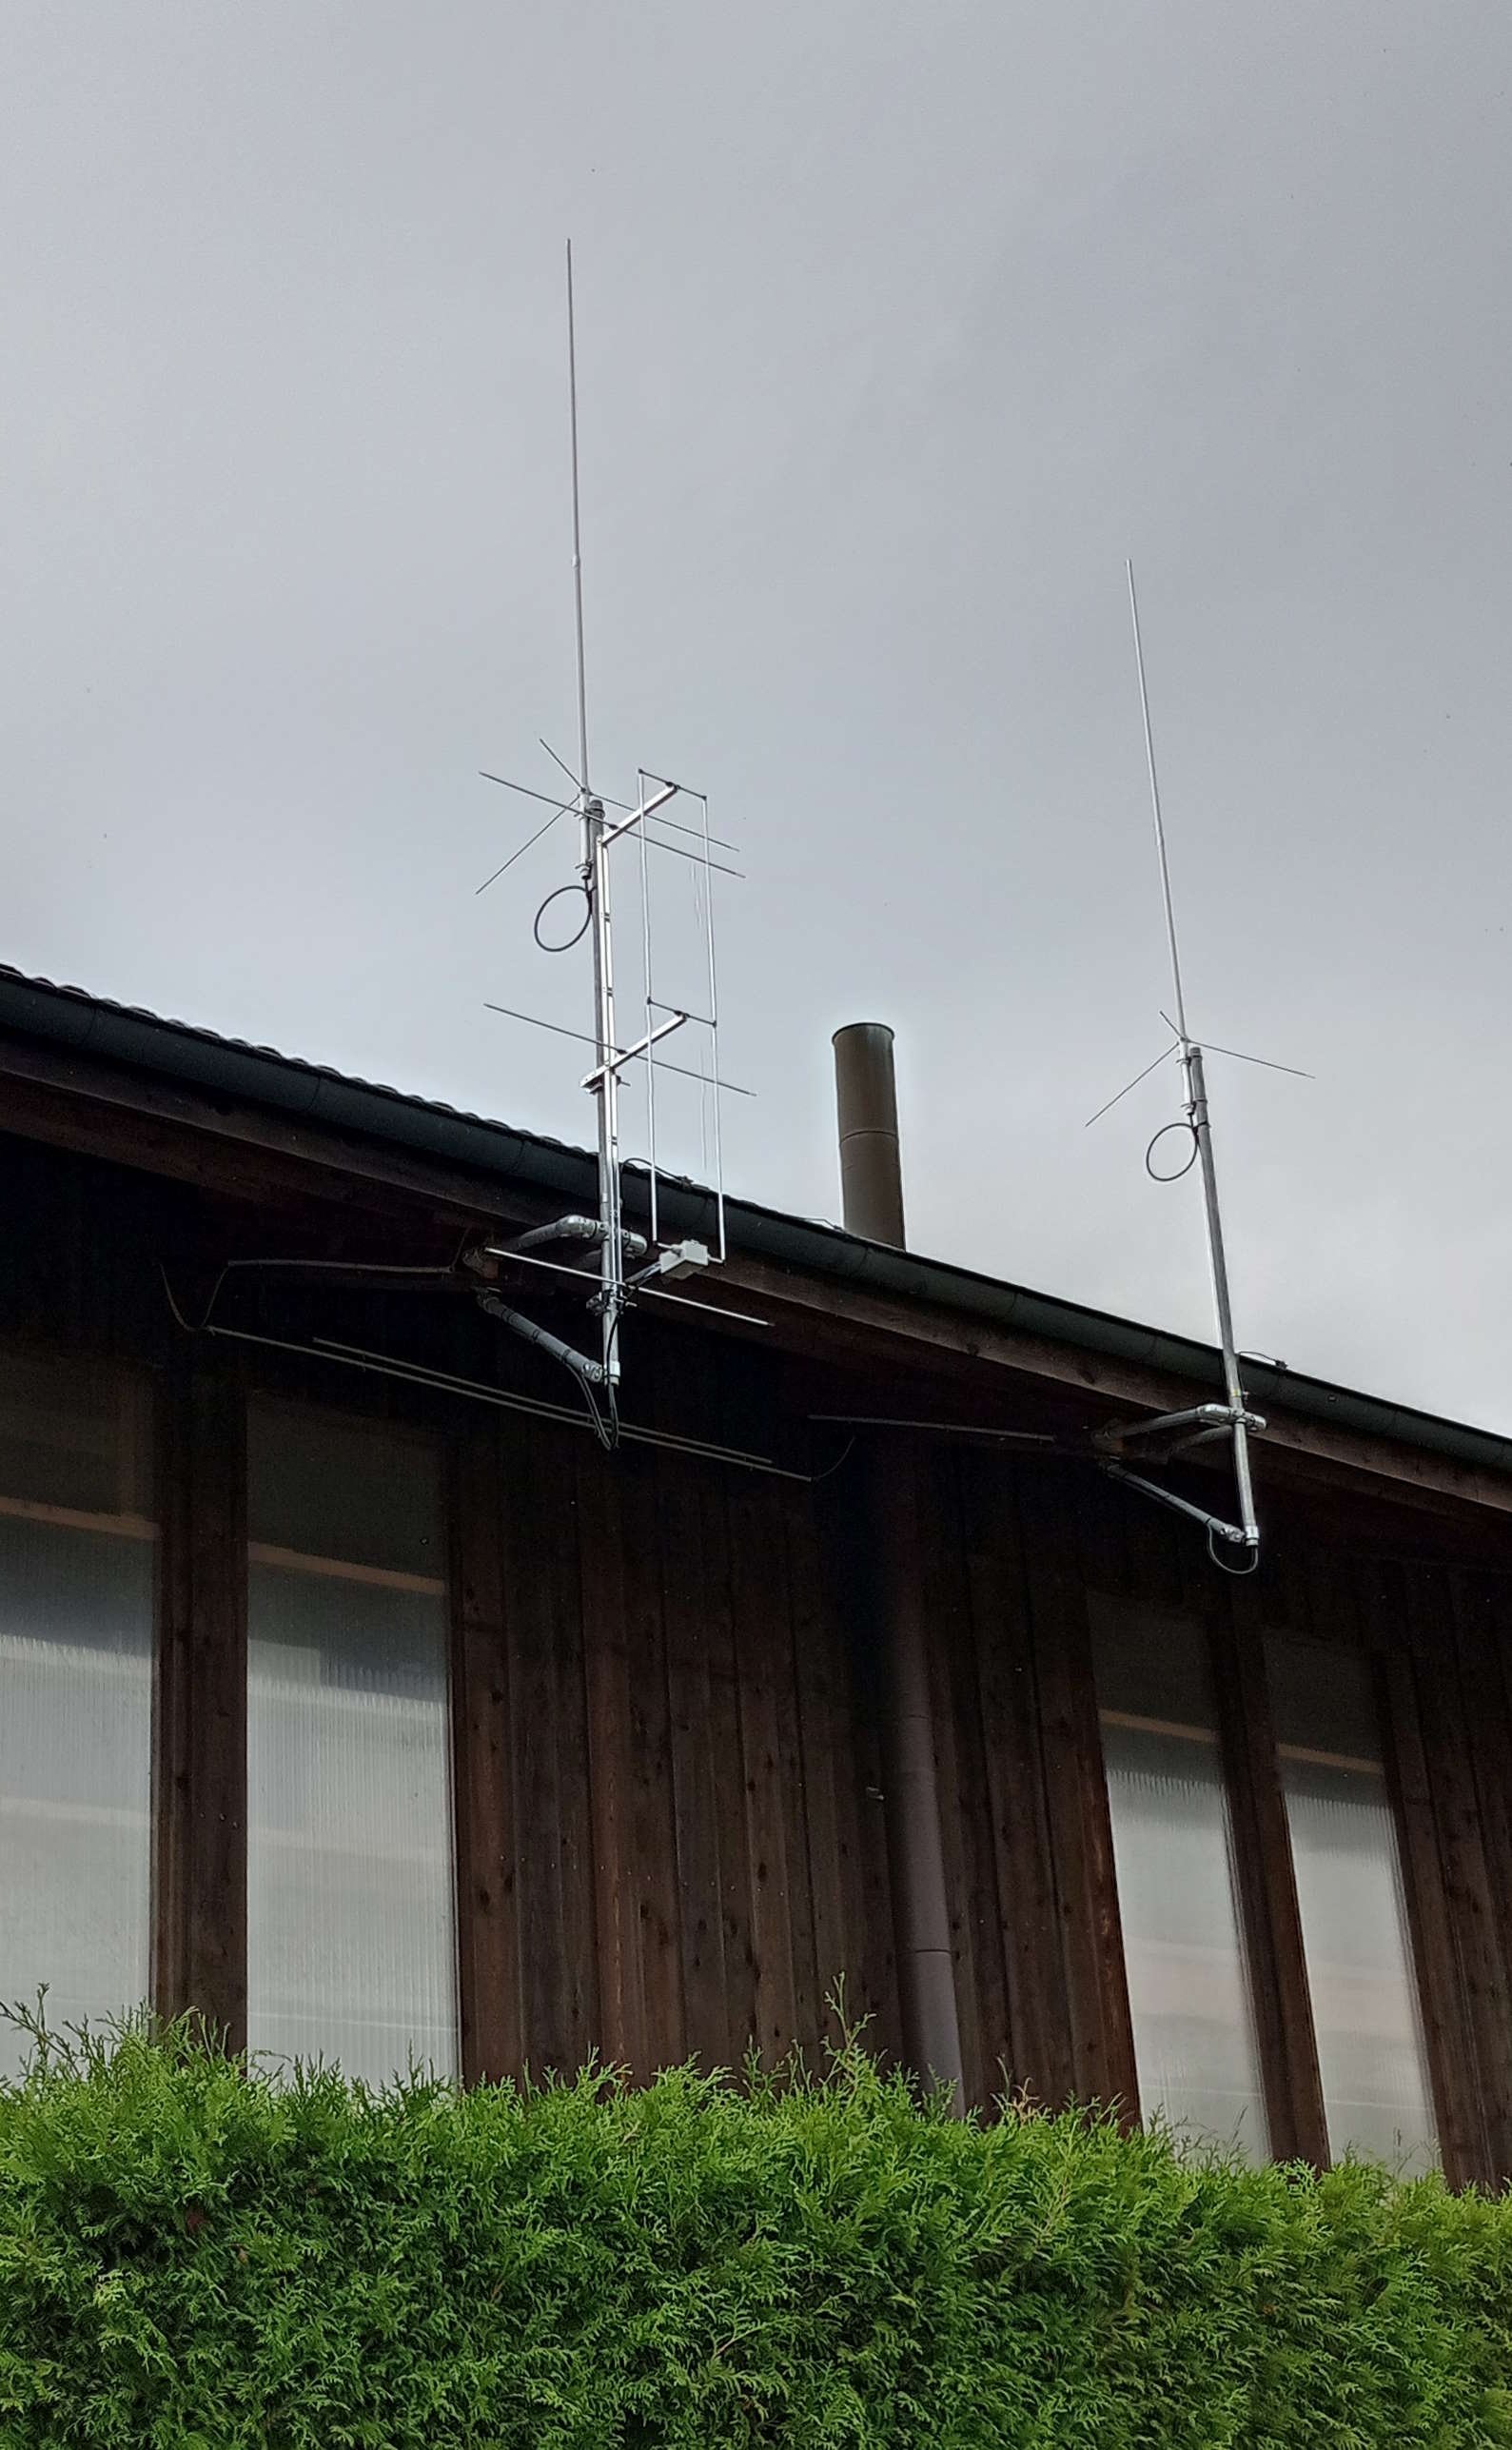 2m and 70cm antennas